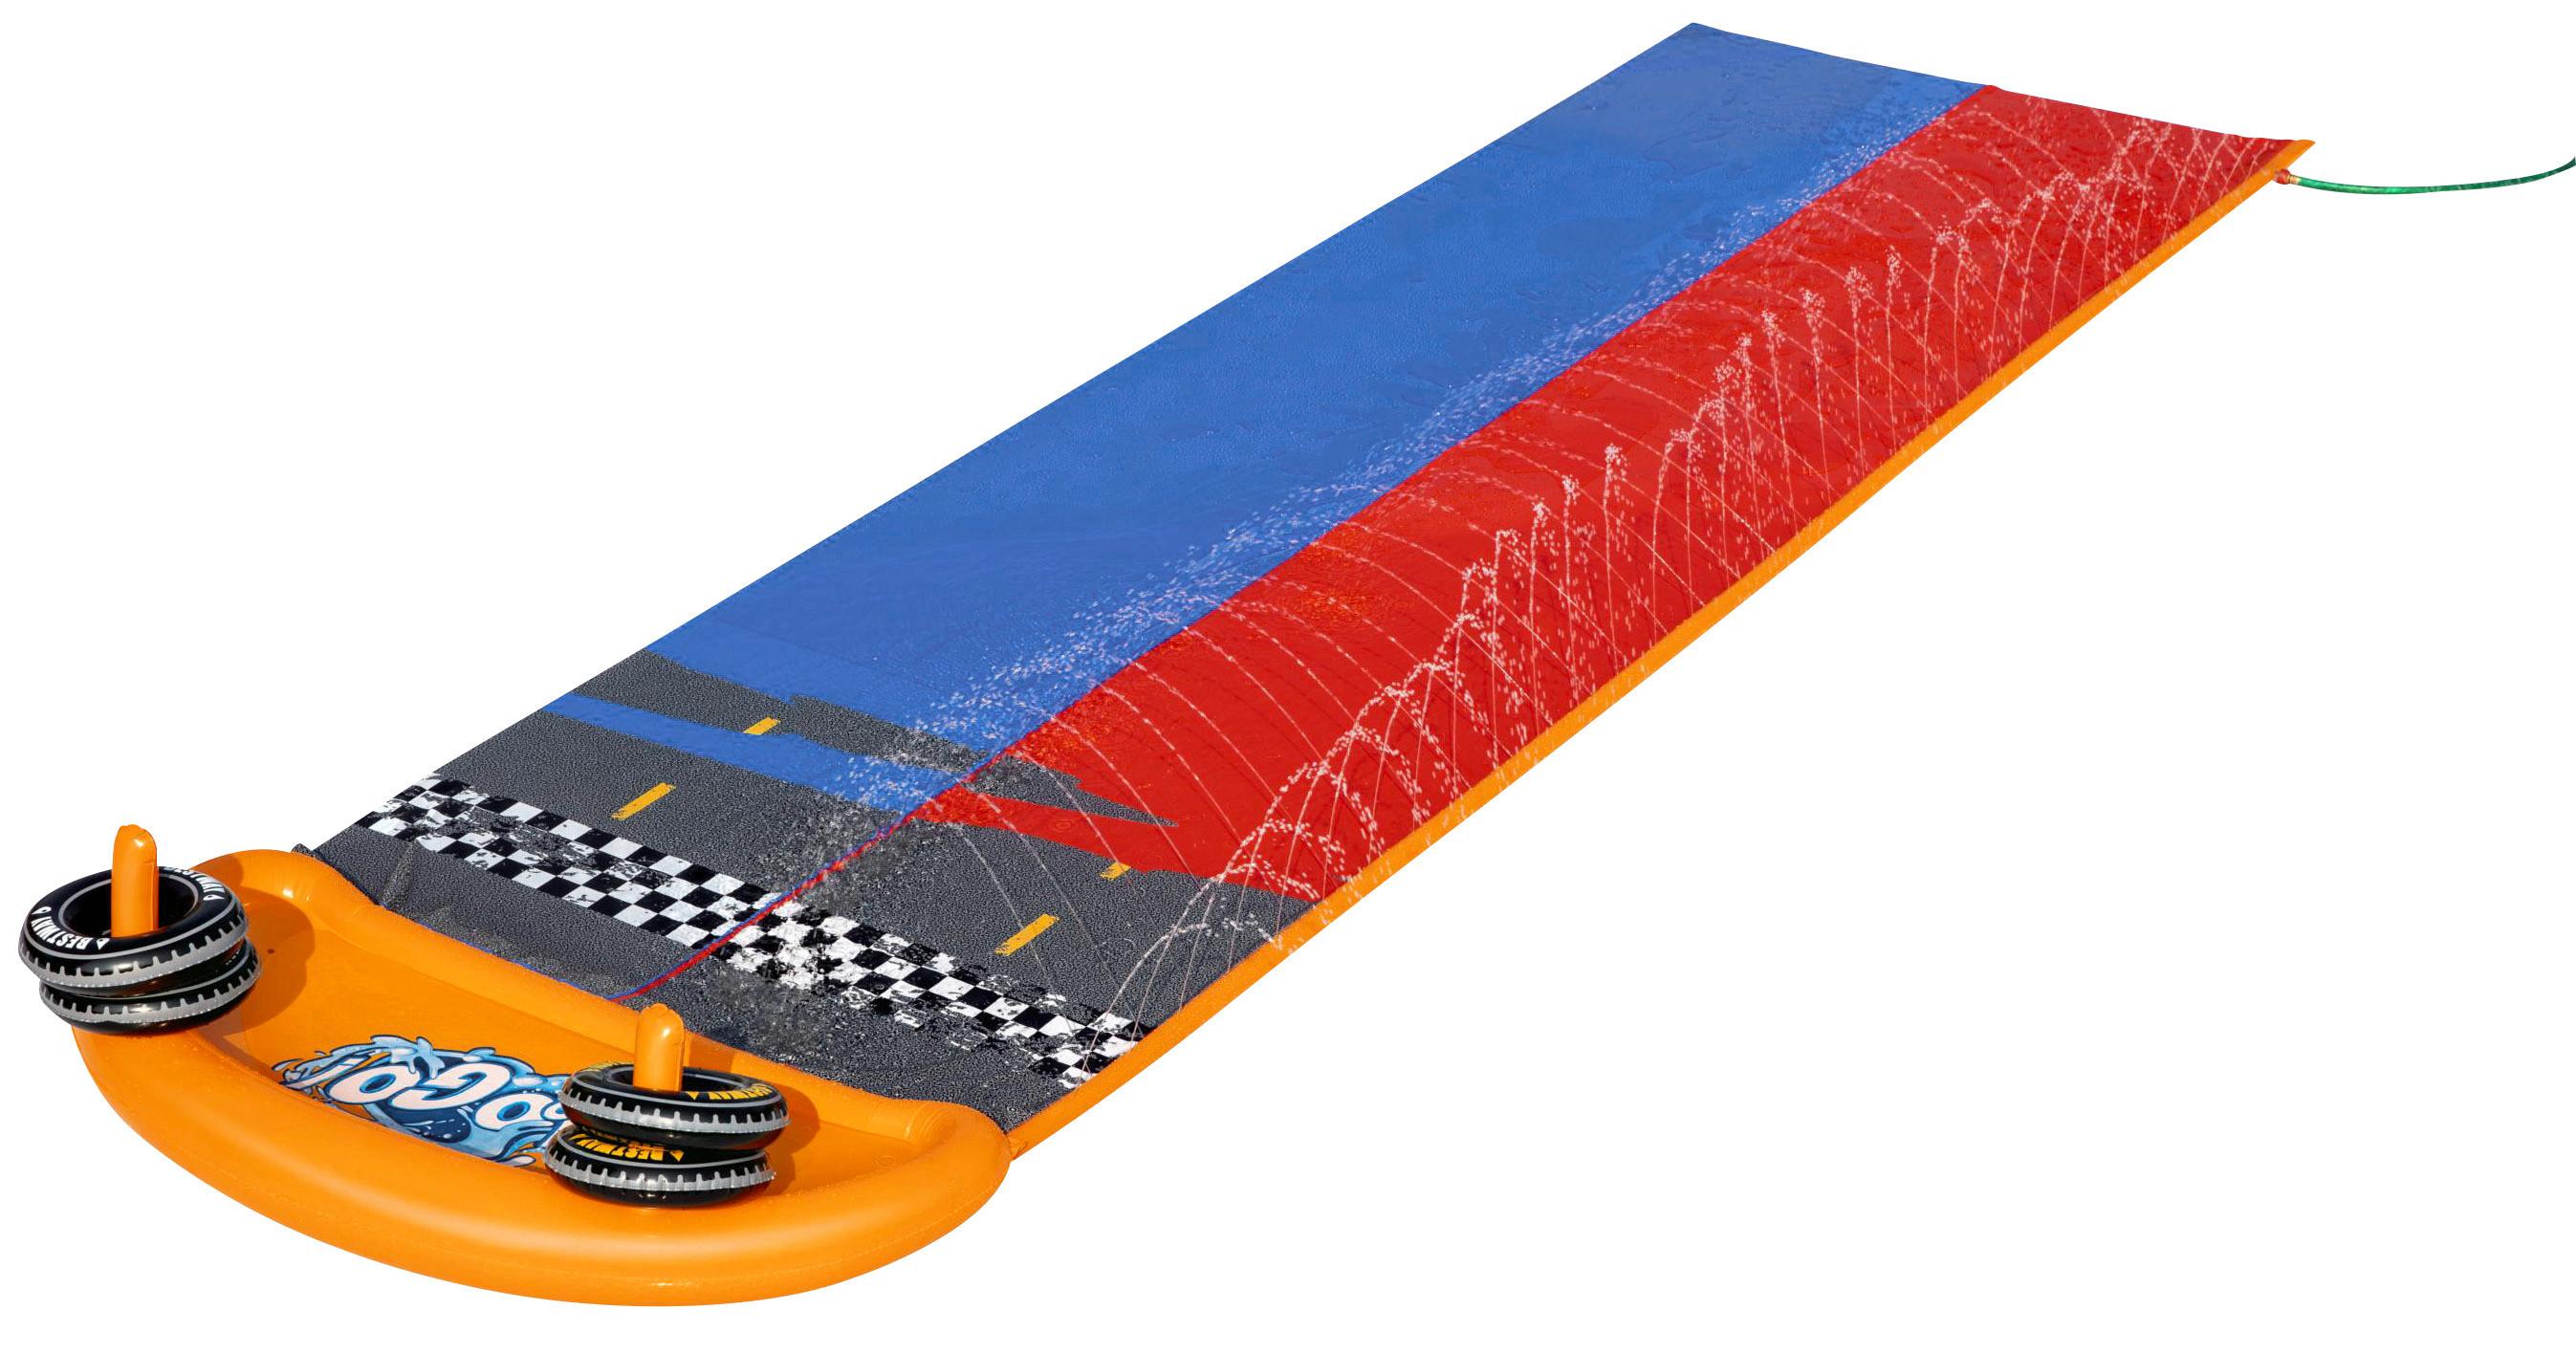 Wasserrutsche Splashy Speedway L: 488 cm - Blau/Rot, Basics, Kunststoff (1/488cm) - Bestway